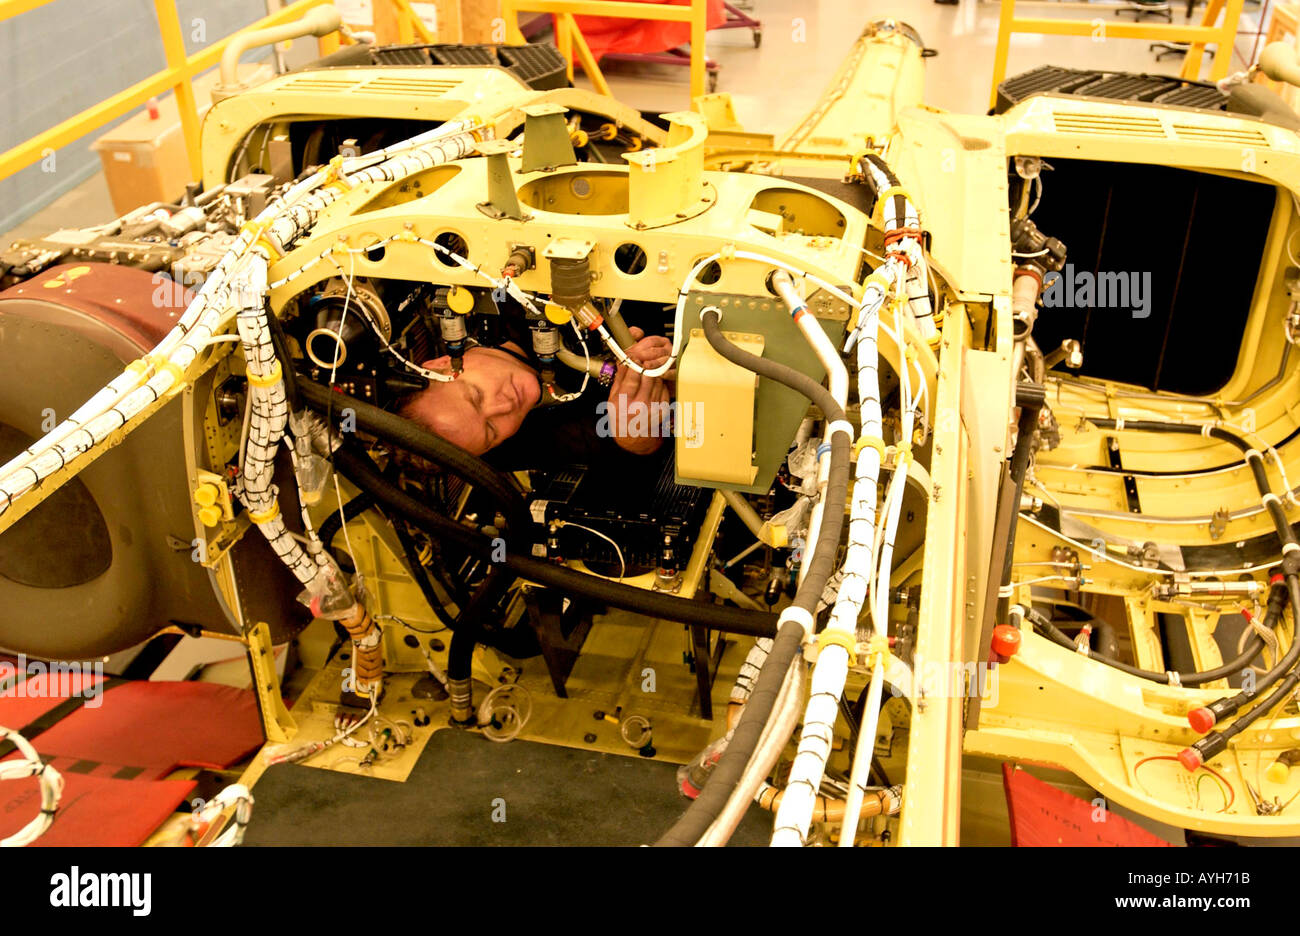 Ein Monteur an der Westland Hubschrauber Fabrik Yeovil Somerset Avon Großbritannien UK Großbritannien Stockfoto